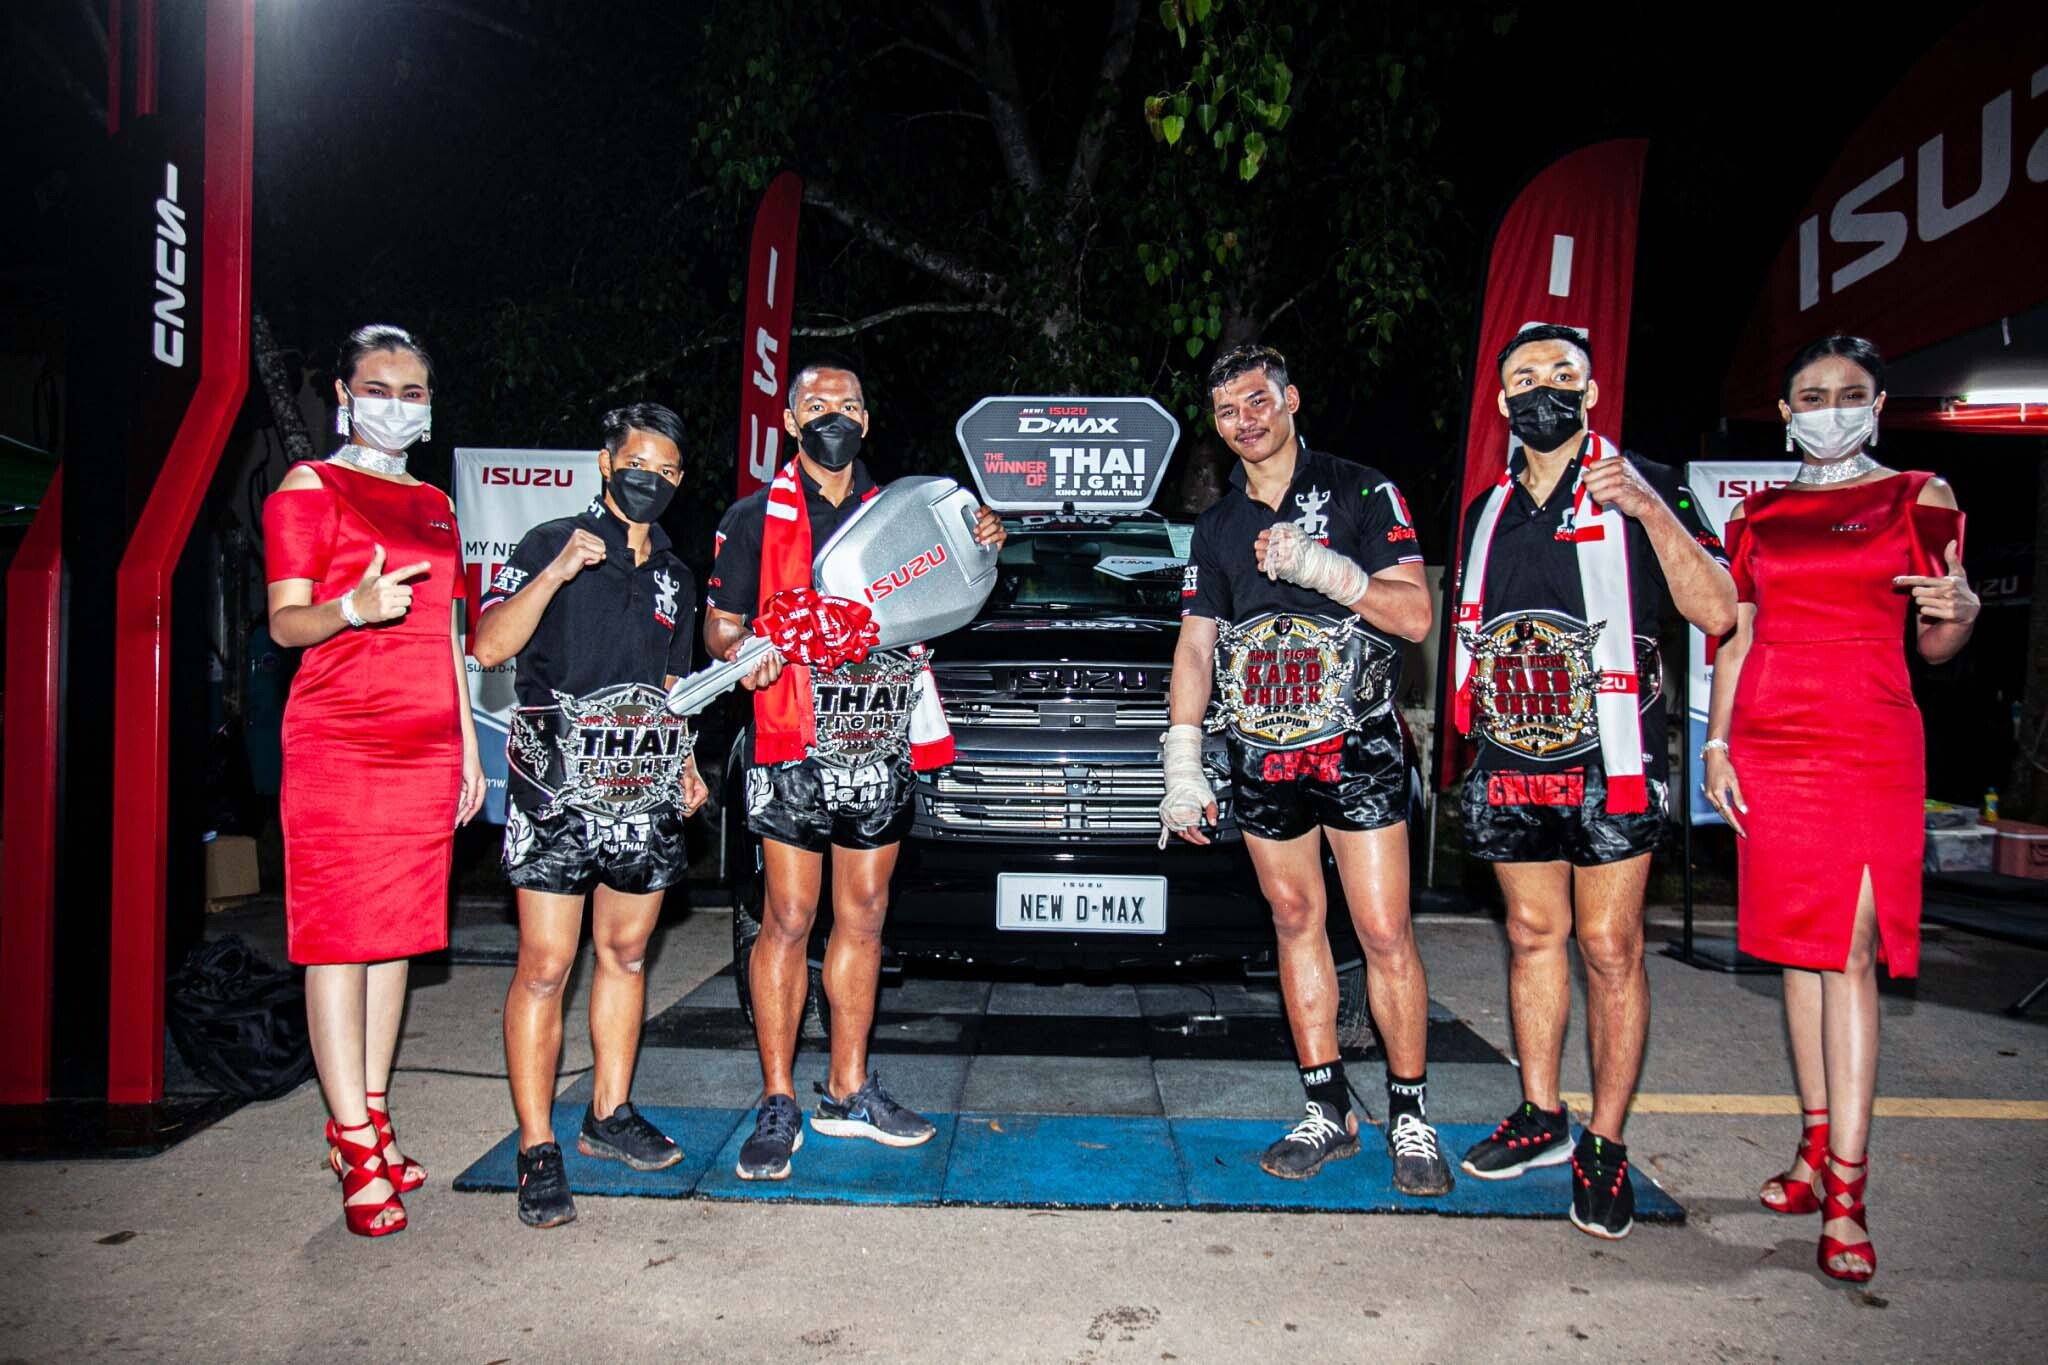 อีซูซุแสดงความยินดีกับ 4 สุดยอดนักชกไทยคว้าแชมป์ THAI FIGHT 2020 รับรางวัลรถปิกอัพ "ออลนิว อีซูซุดีแมคซ์" และเงินสดรวมมูลค่า 1,400,000 บาท